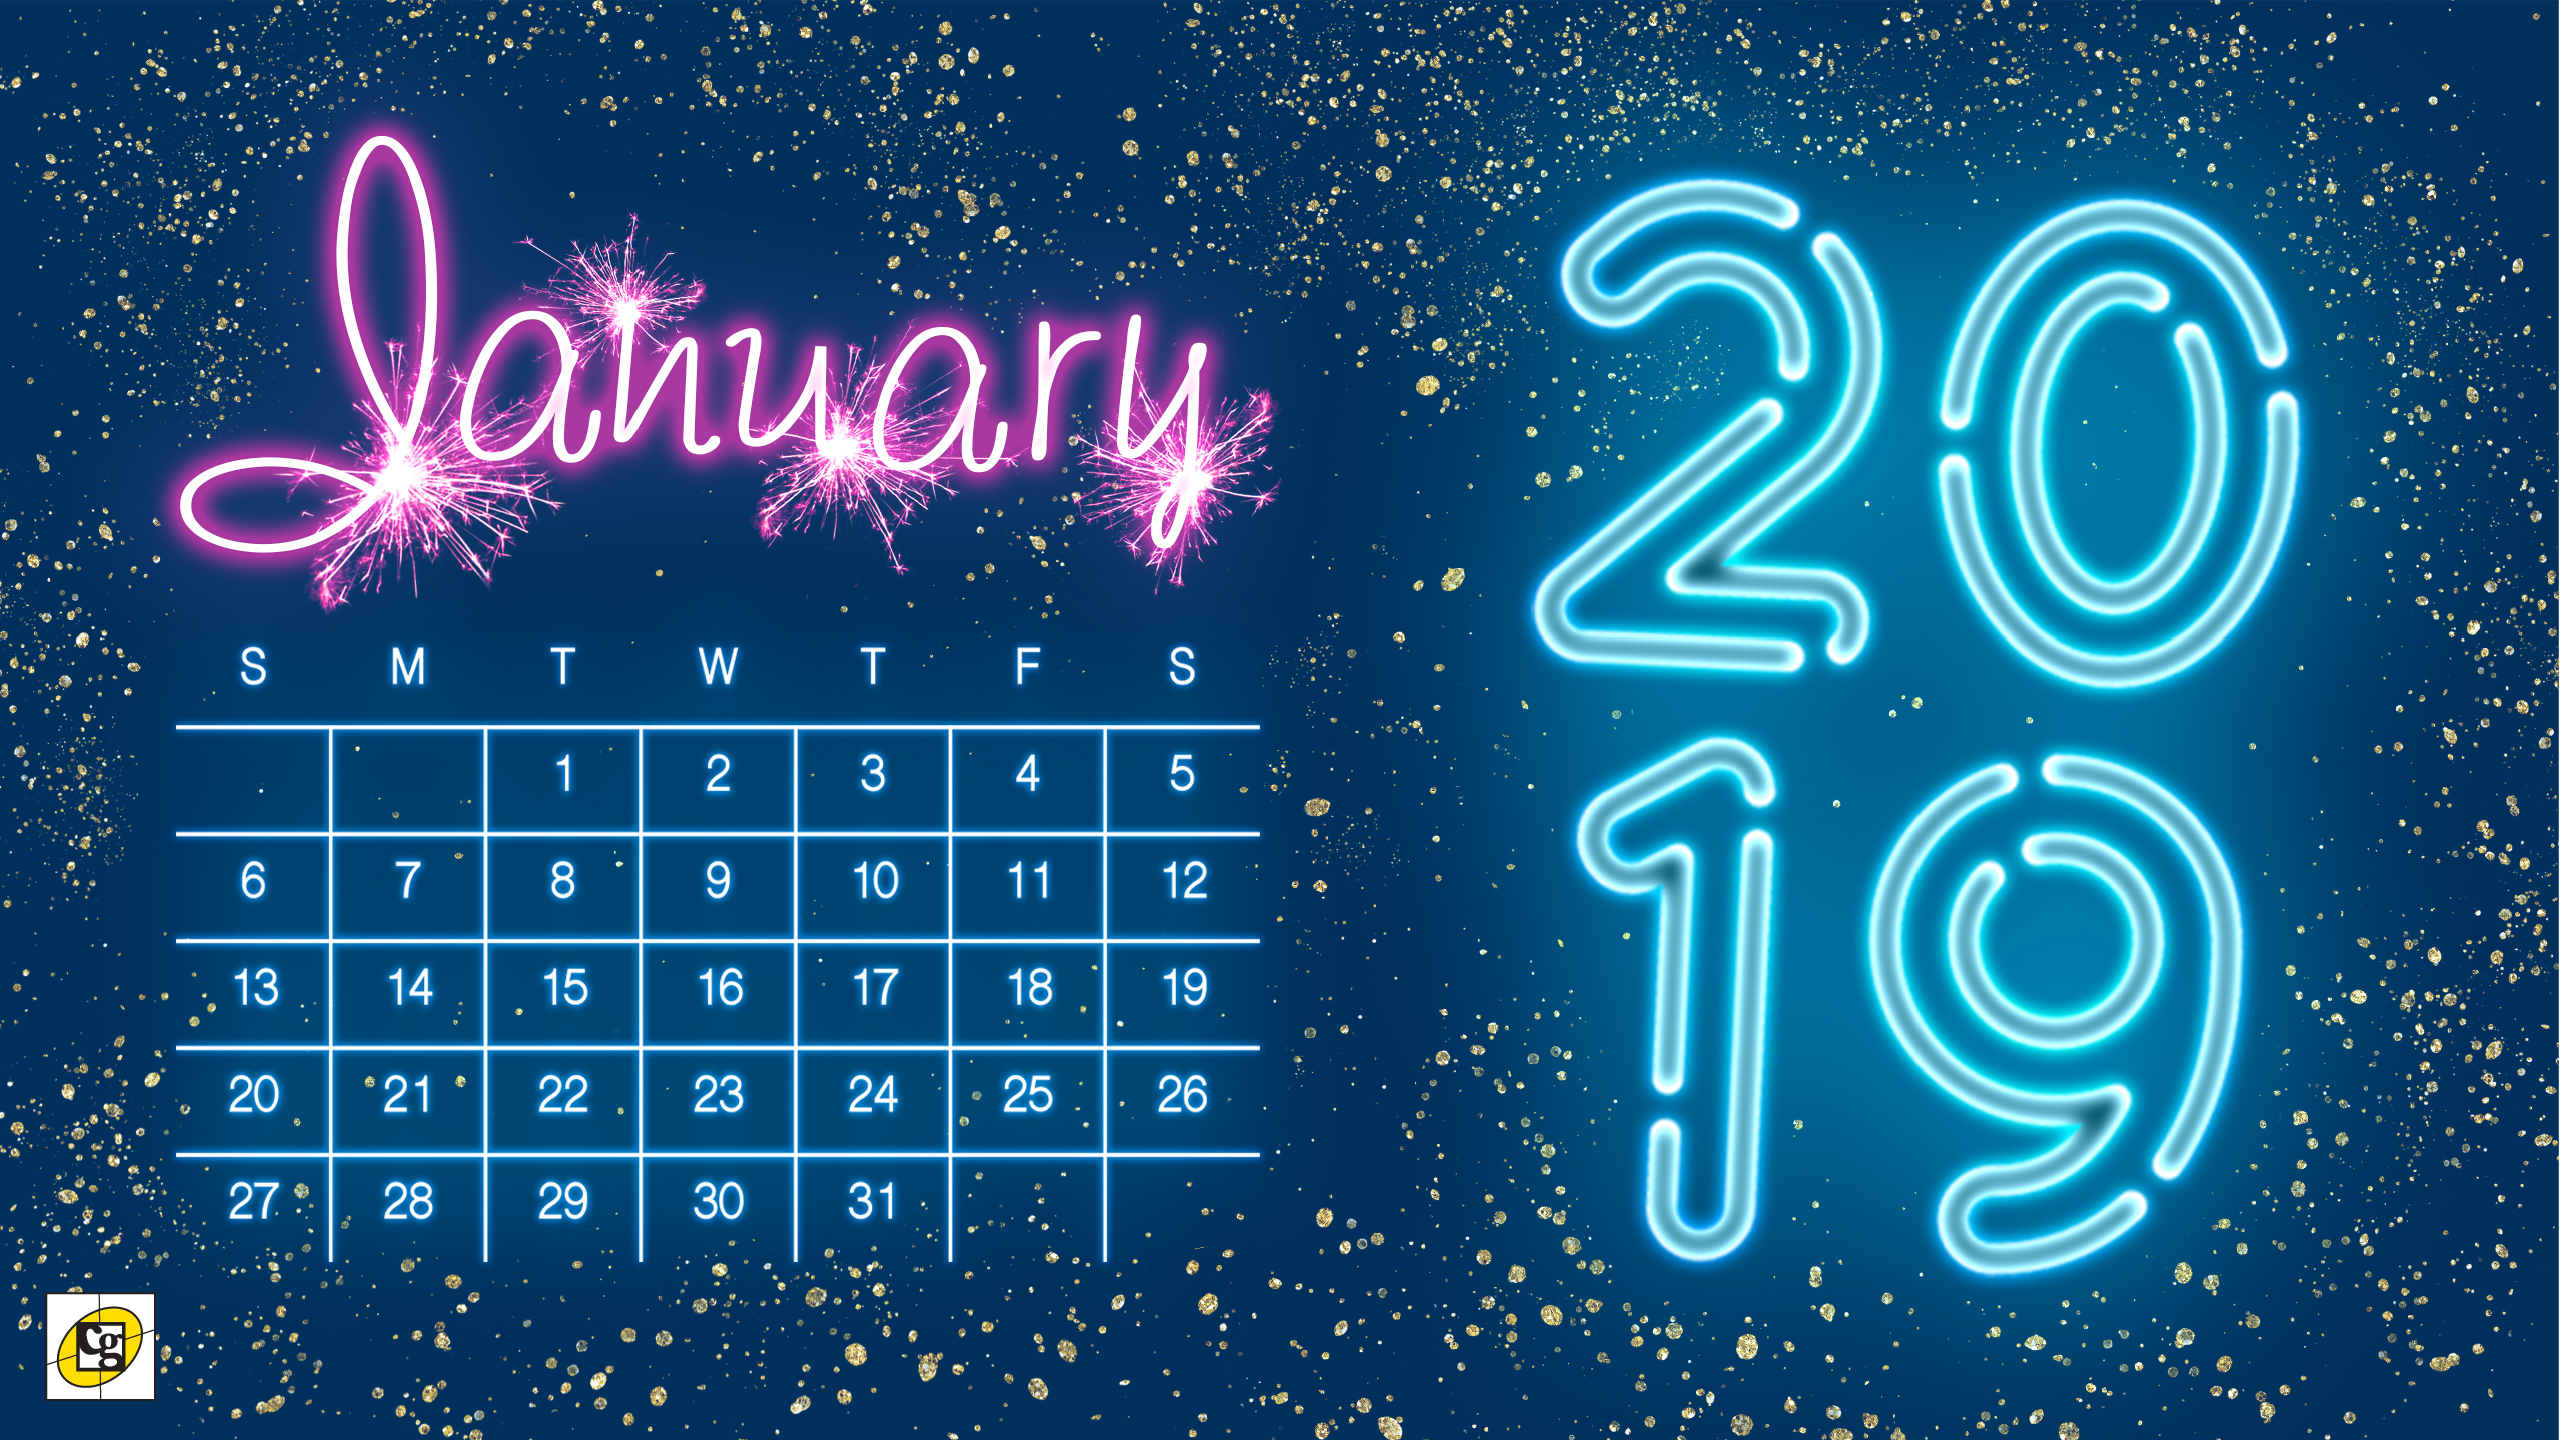 Free Calendar January 2019 Cute